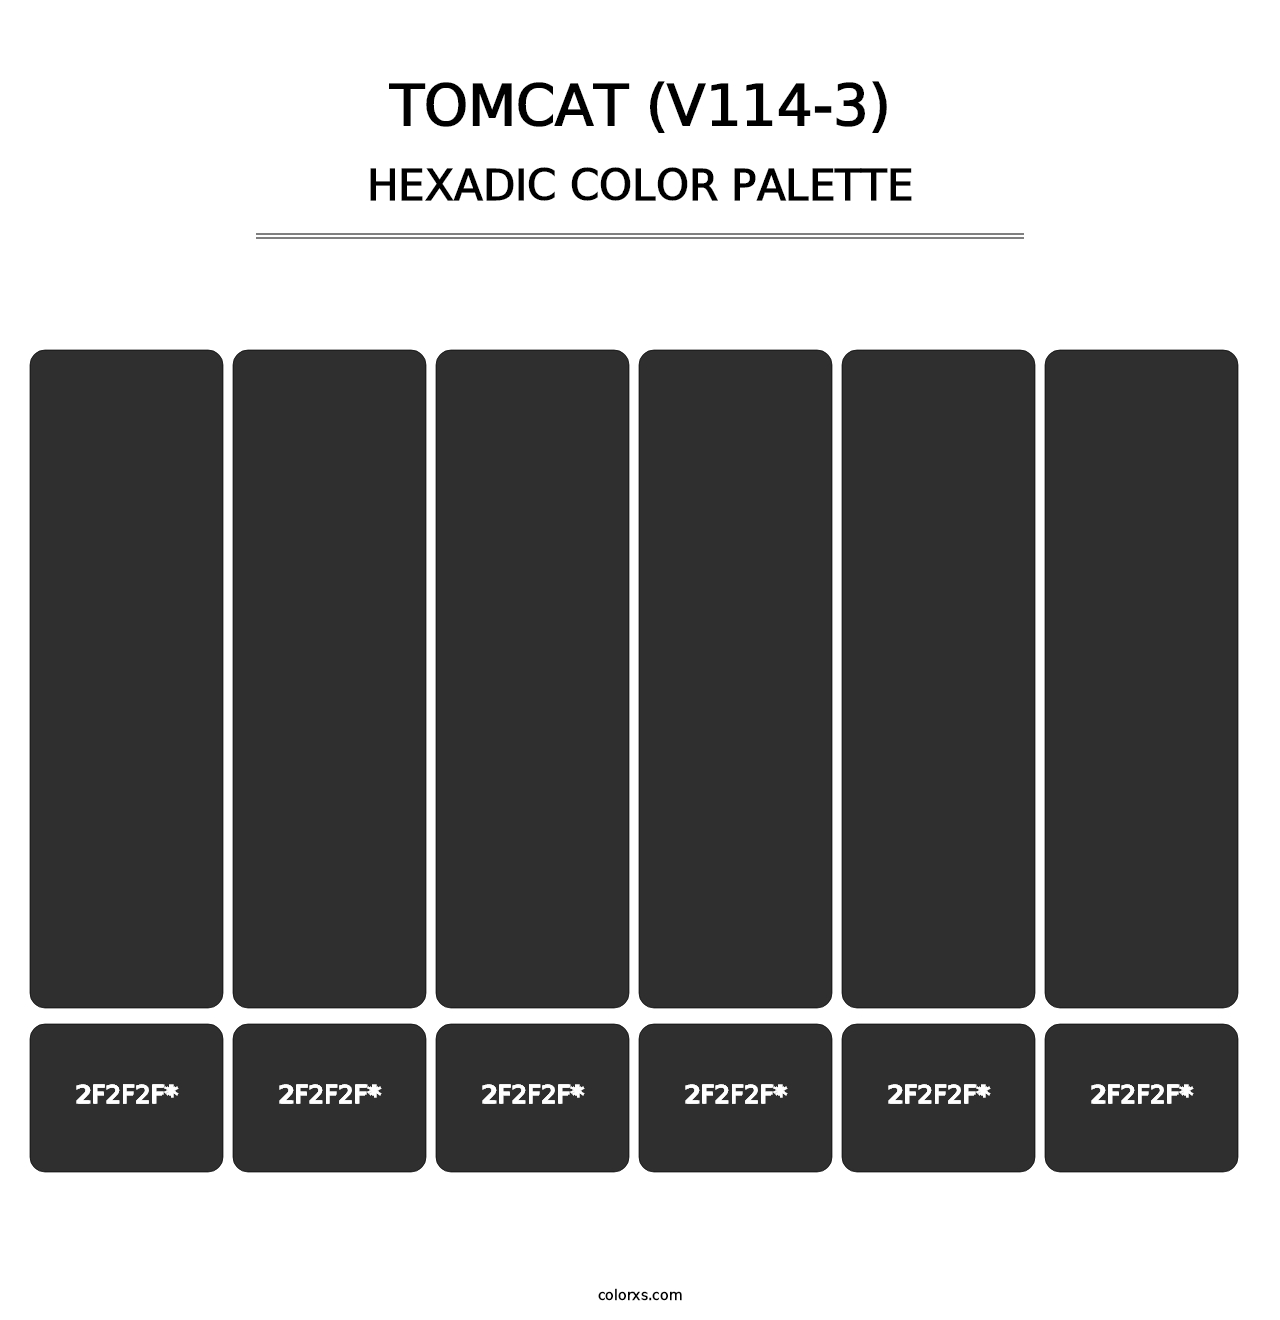 Tomcat (V114-3) - Hexadic Color Palette